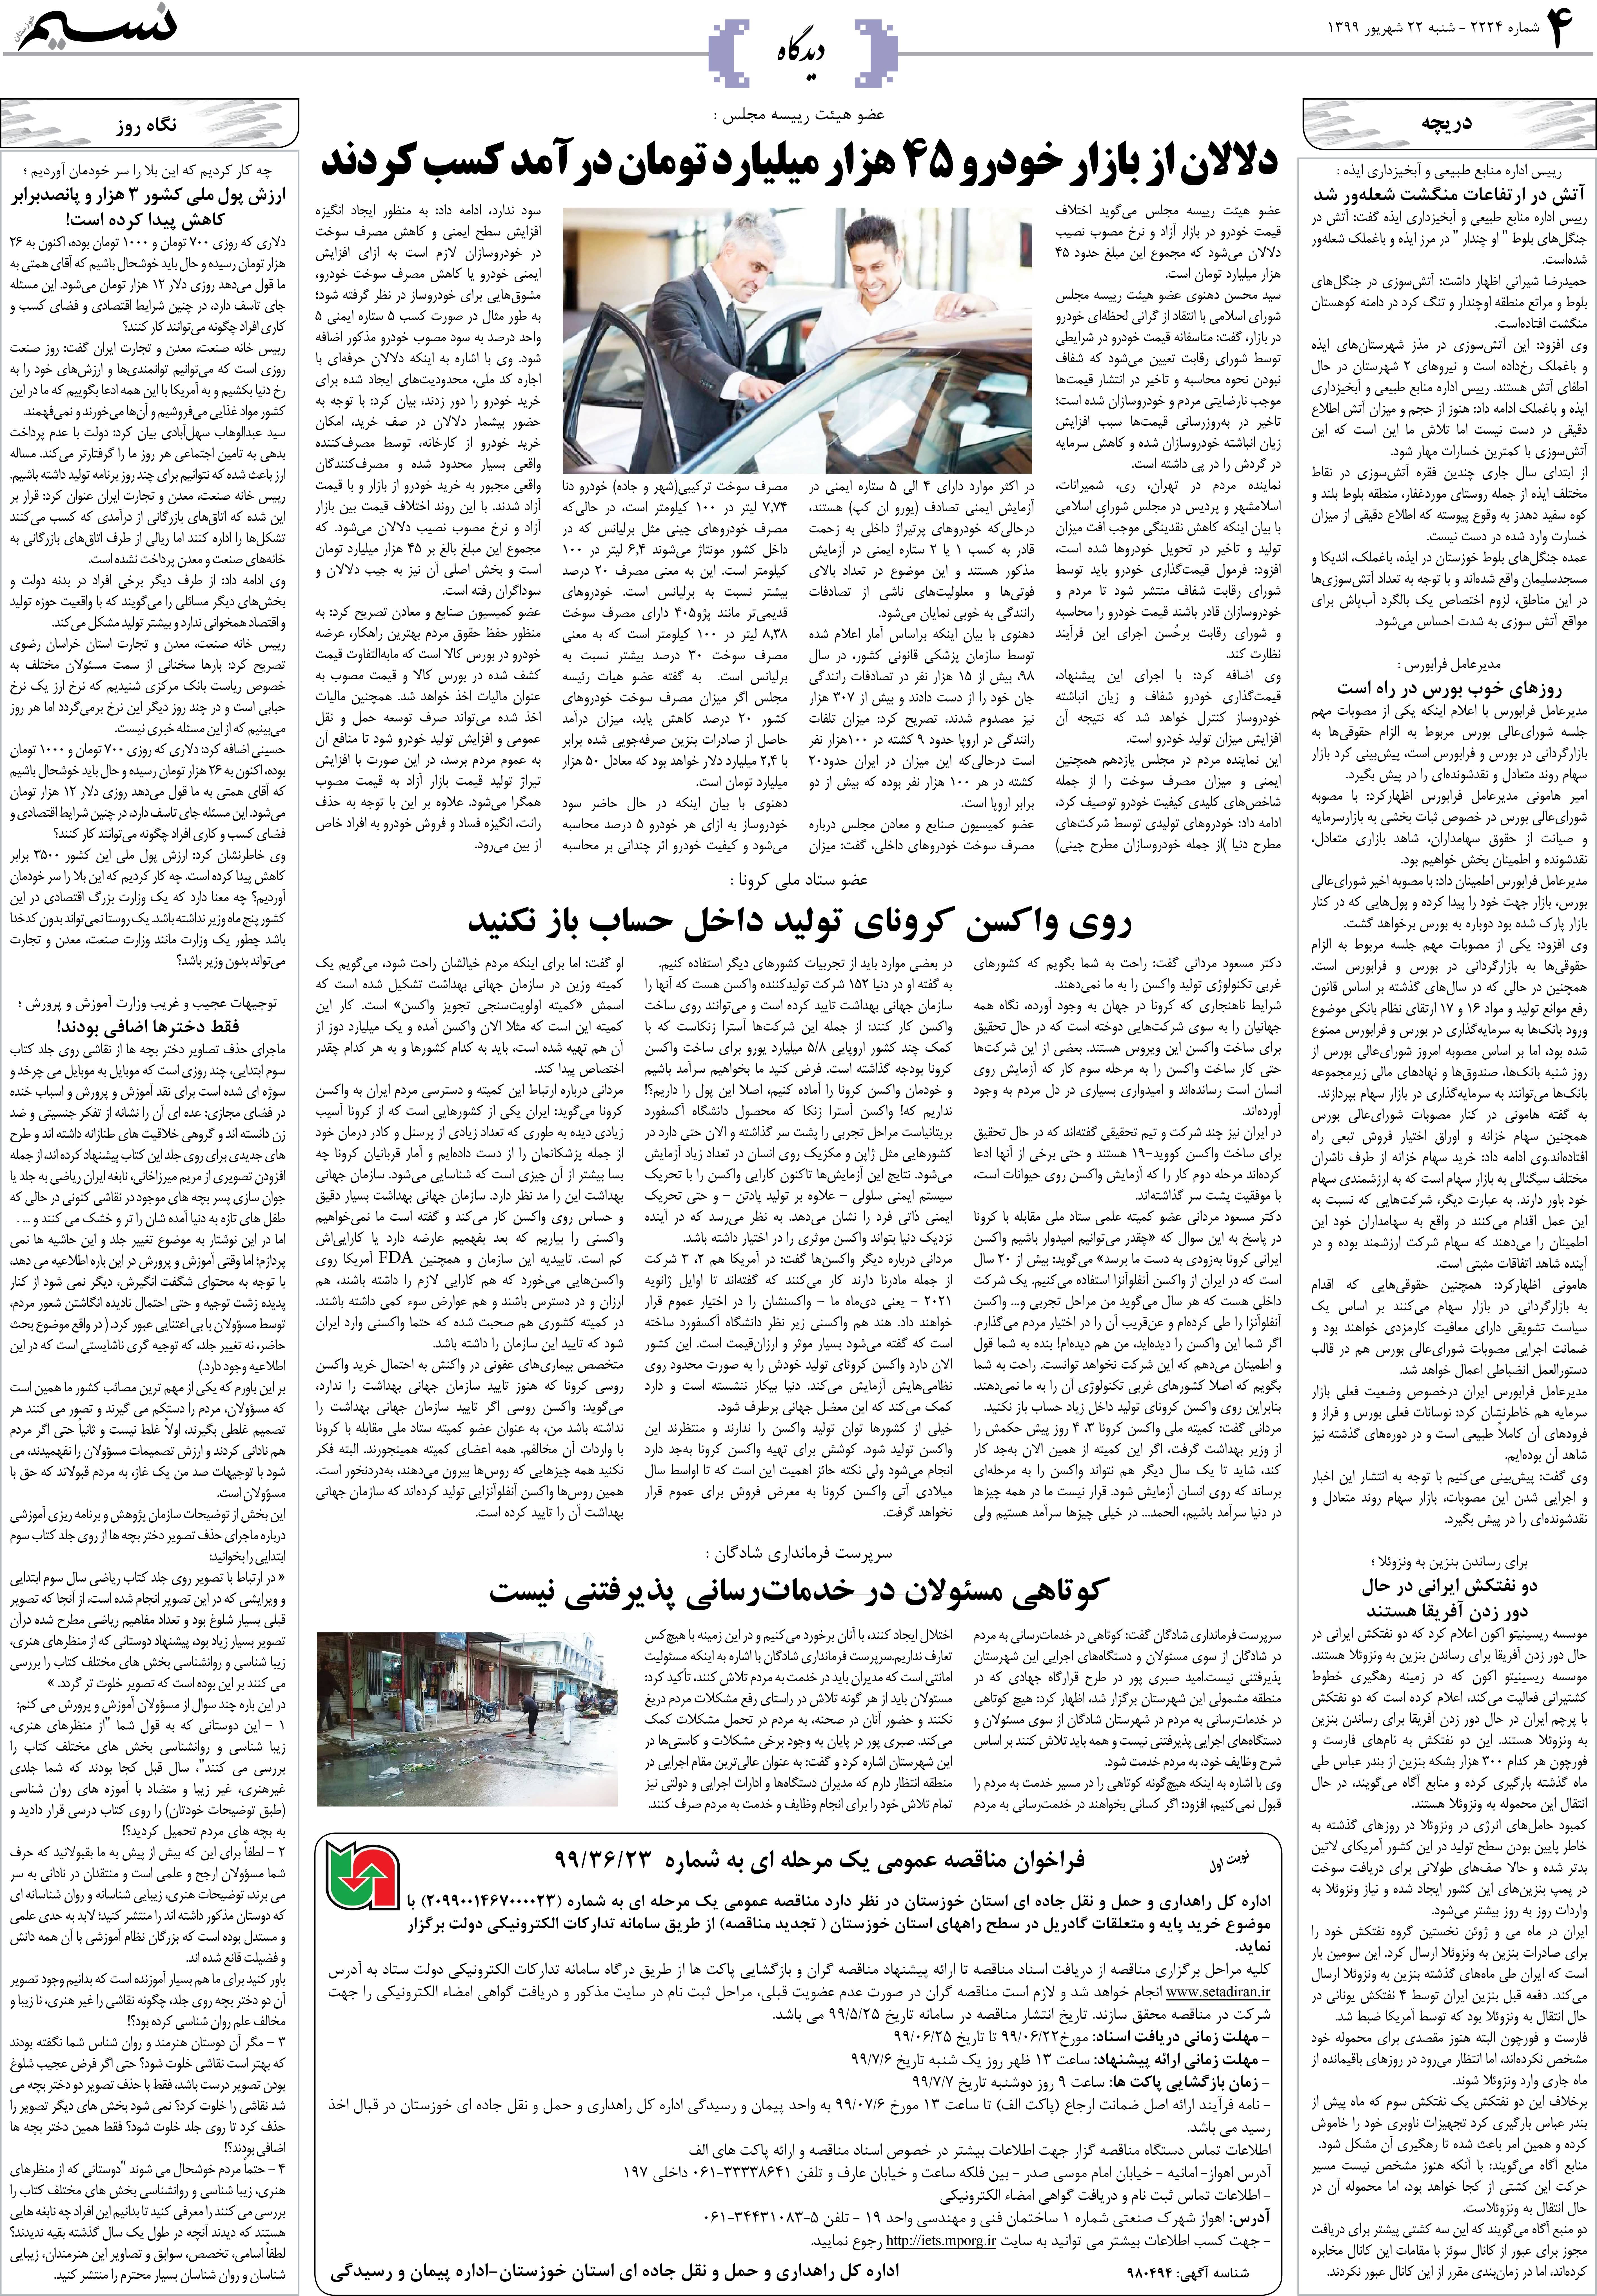 صفحه دیدگاه روزنامه نسیم شماره 2224